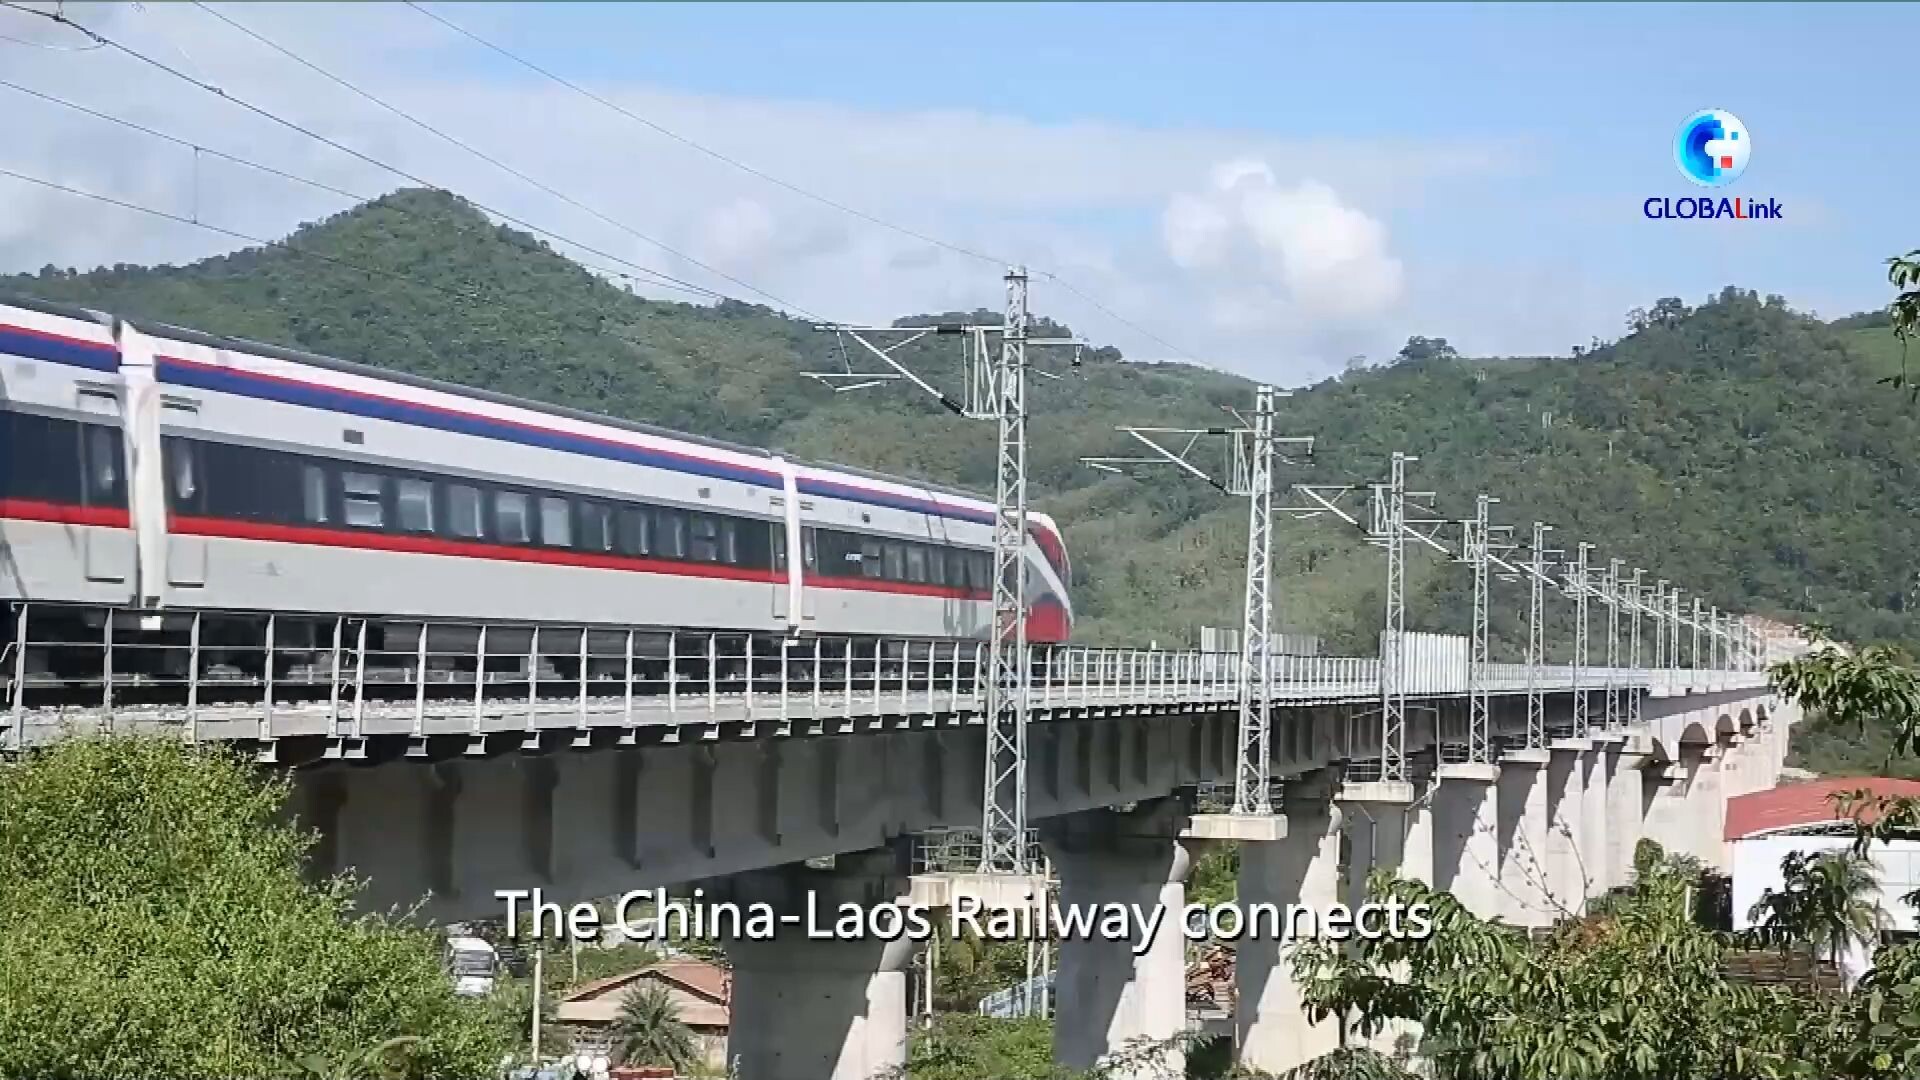 GLOBALink : บริษัทจีนสร้าง 'หมู่บ้าน' ให้ชาวลาวย้ายถิ่นฐานเพื่อ 'ทางรถไฟจีน-ลาว'